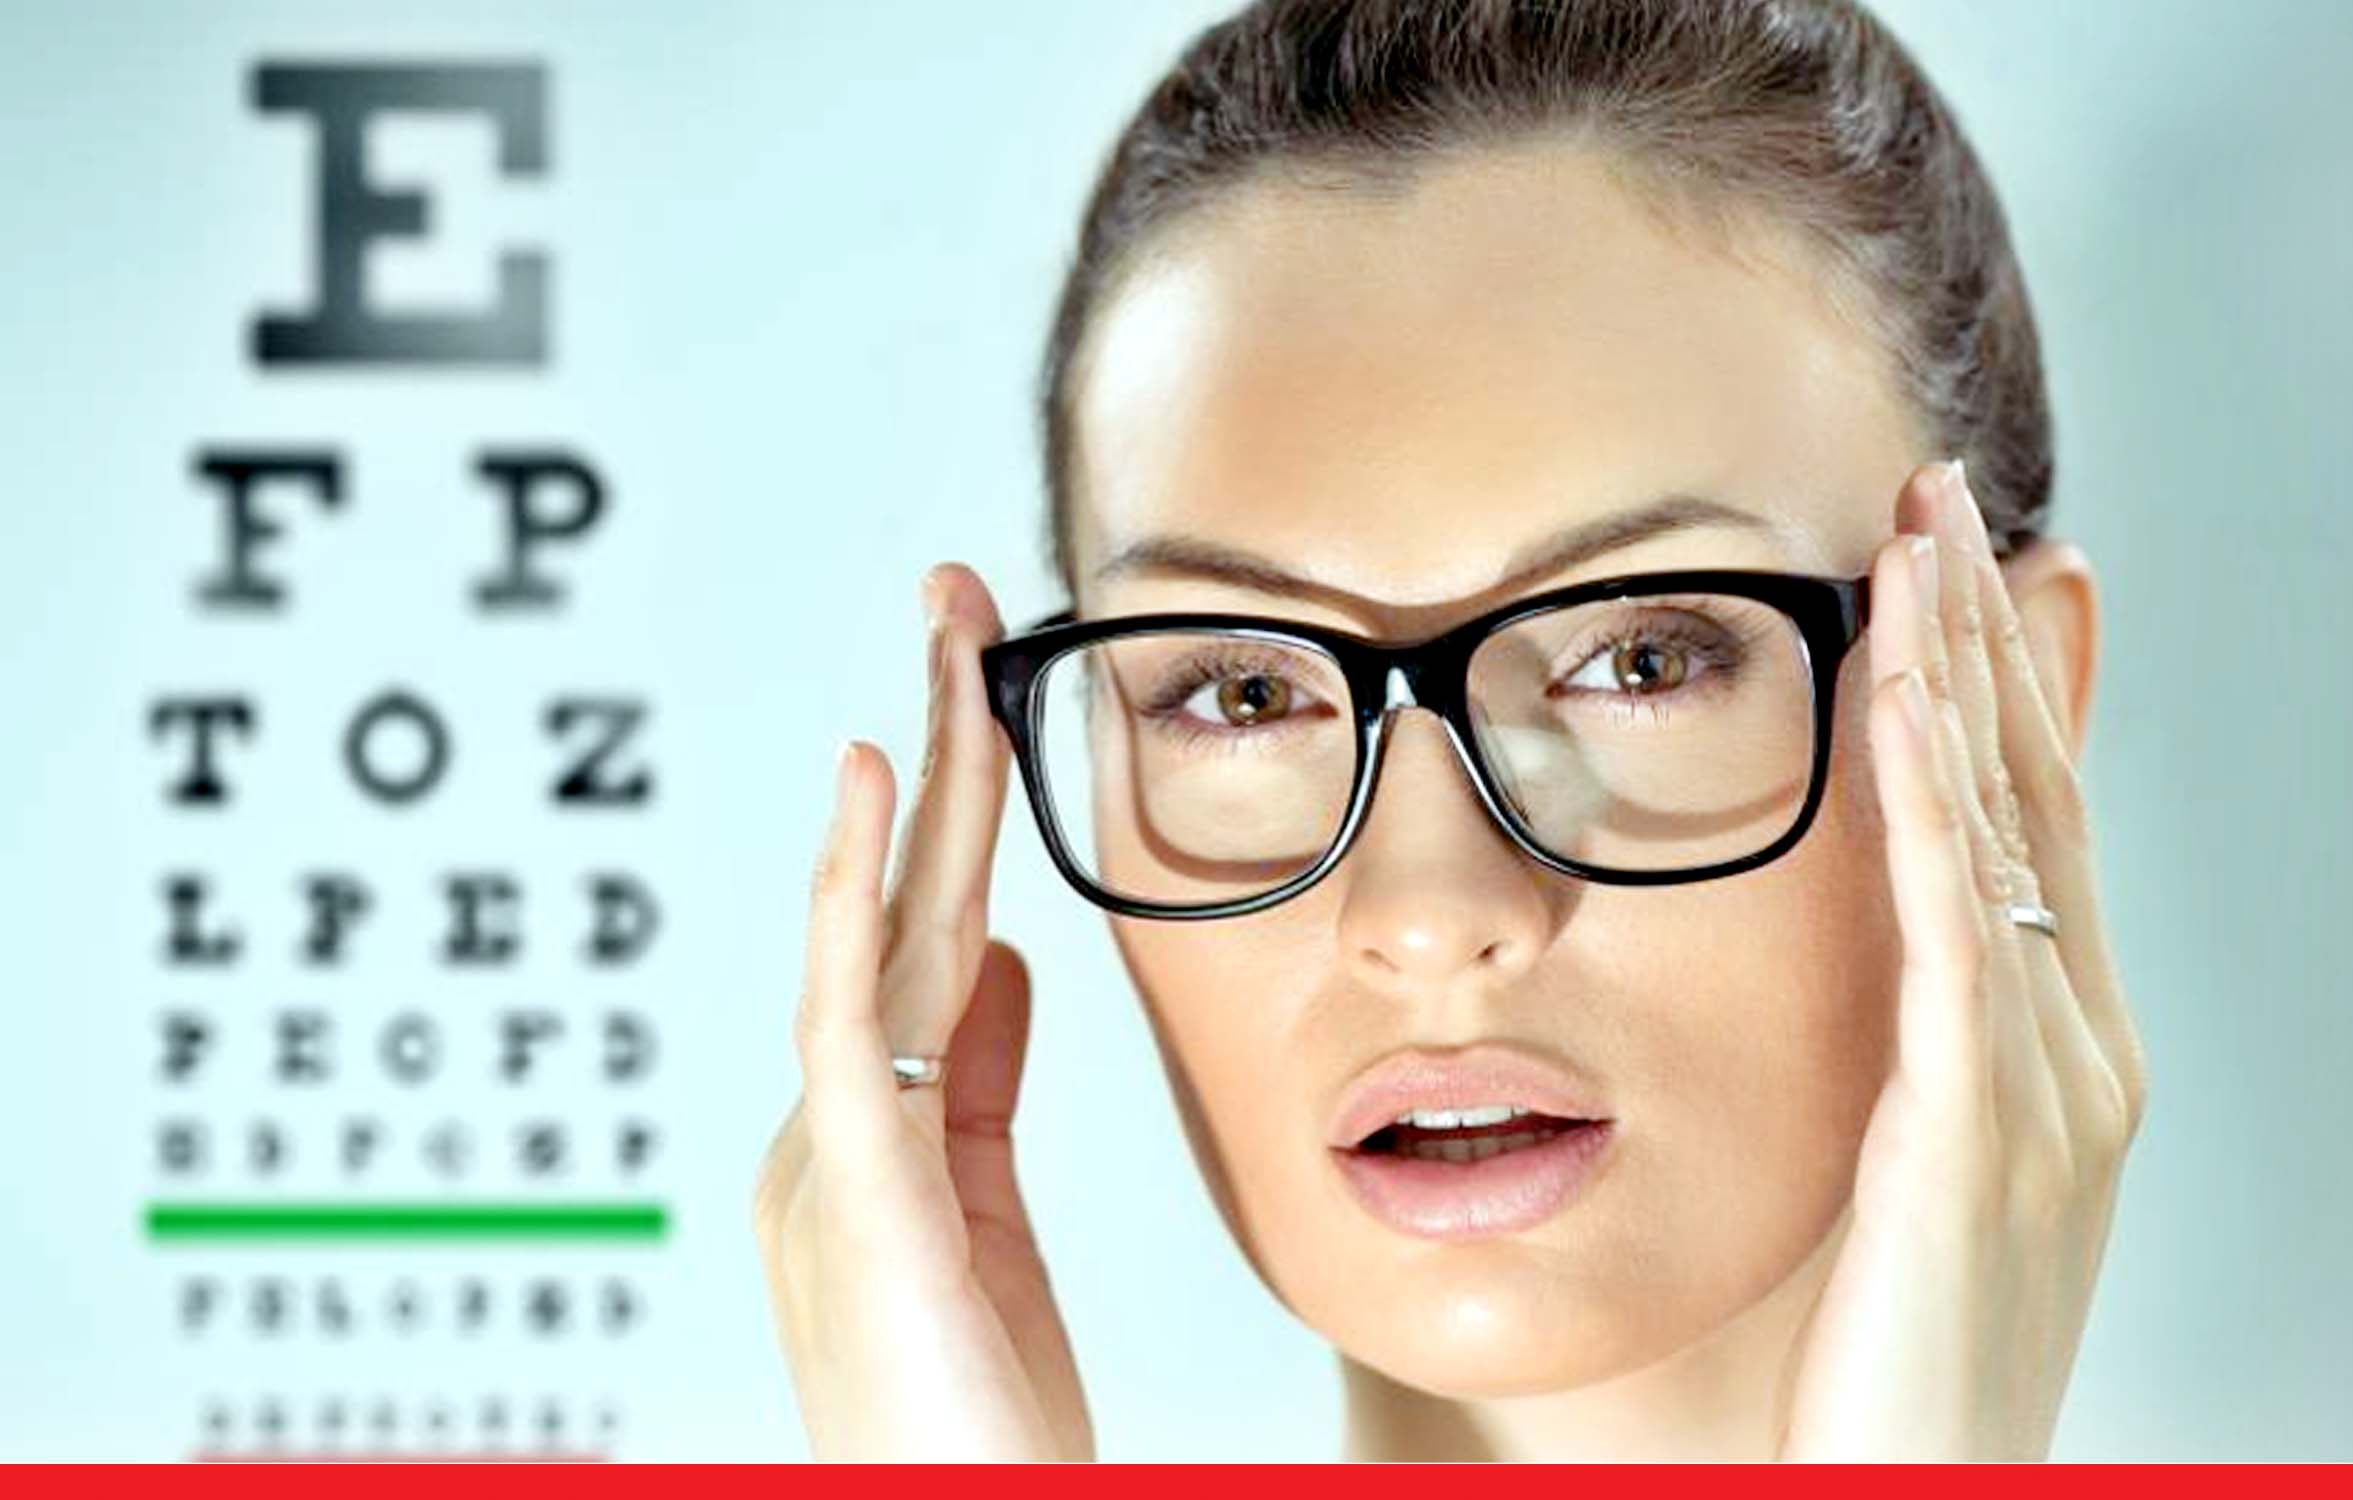 ये शुरुआती लक्षण आंखें कमजोर होने का संकेत, तुरंत करवाएं जांच